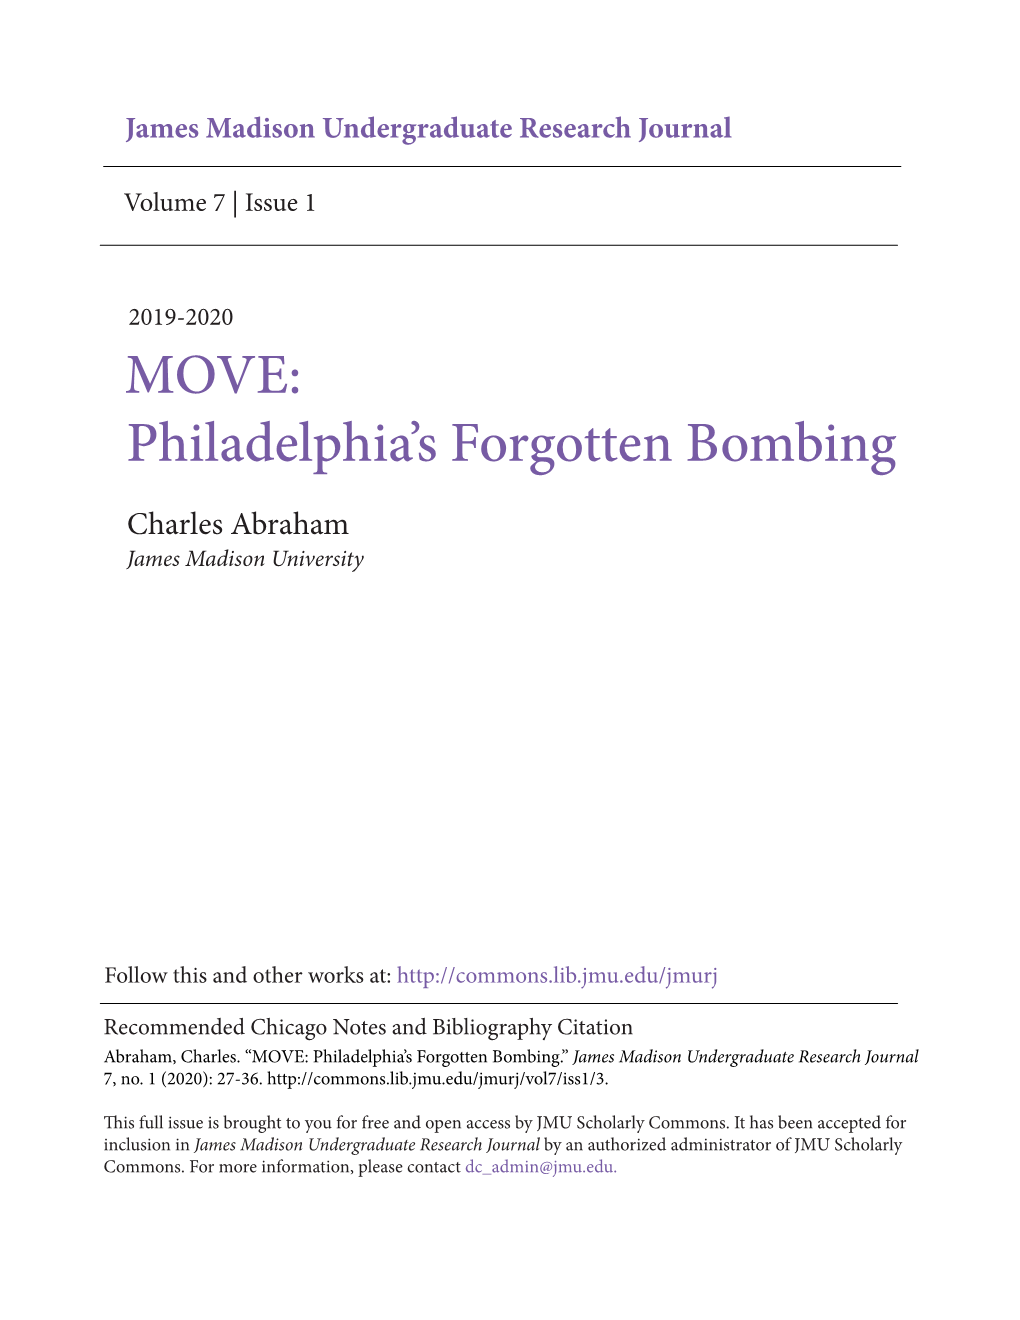 Philadelphia's Forgotten Bombing